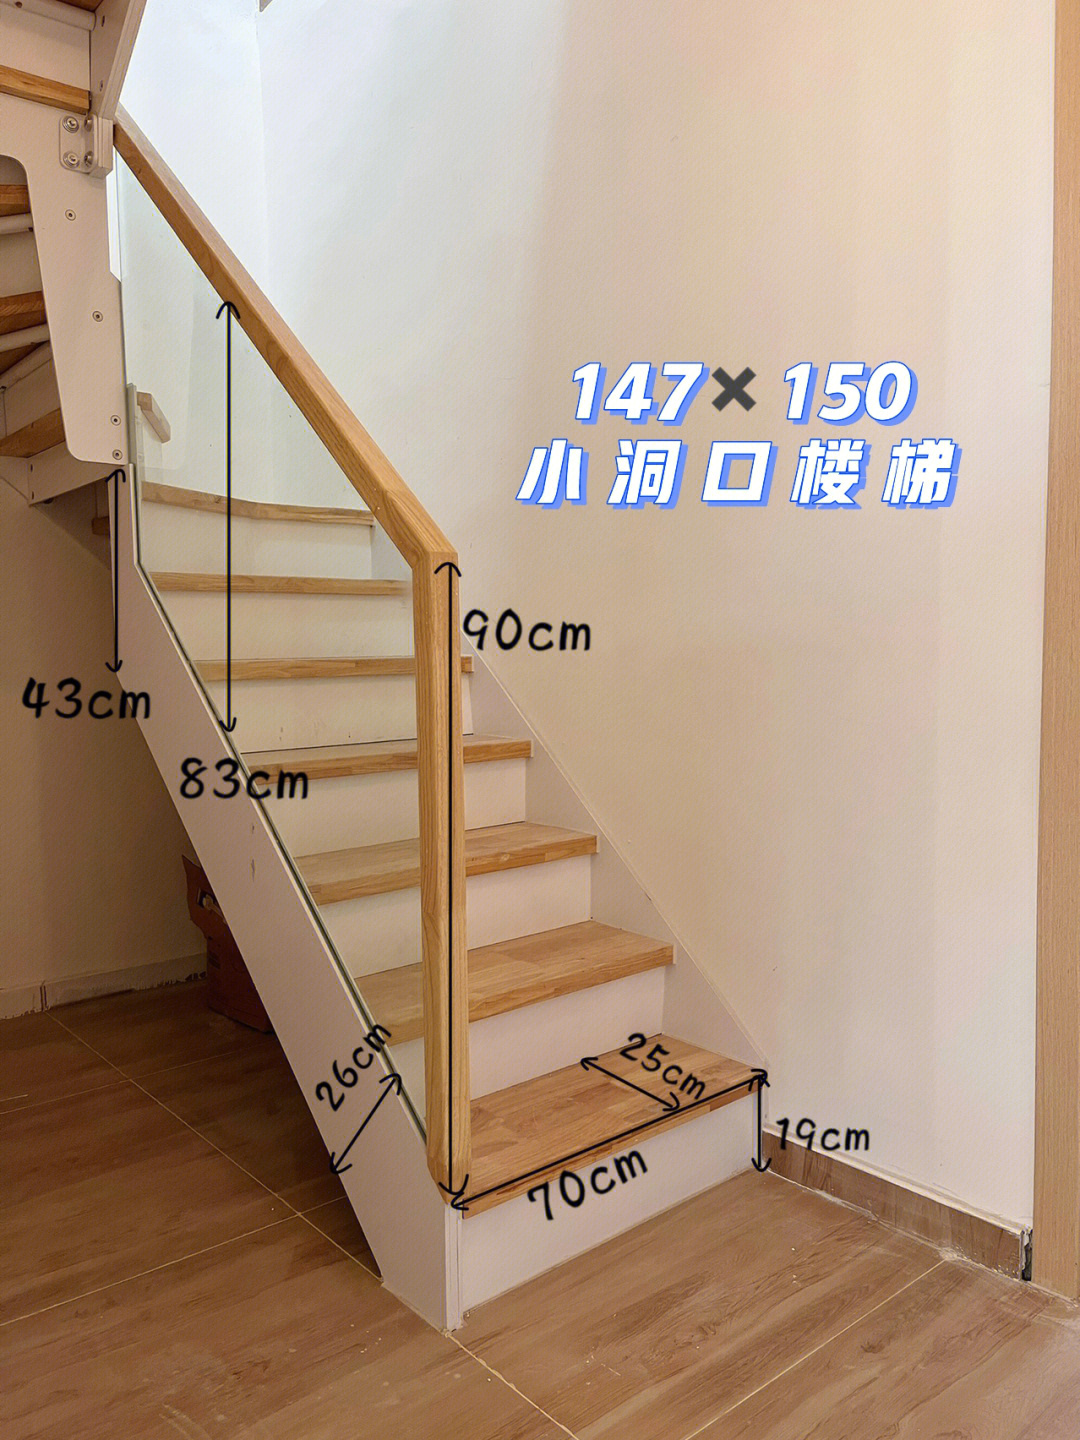 2米x2米洞口楼梯设计图片